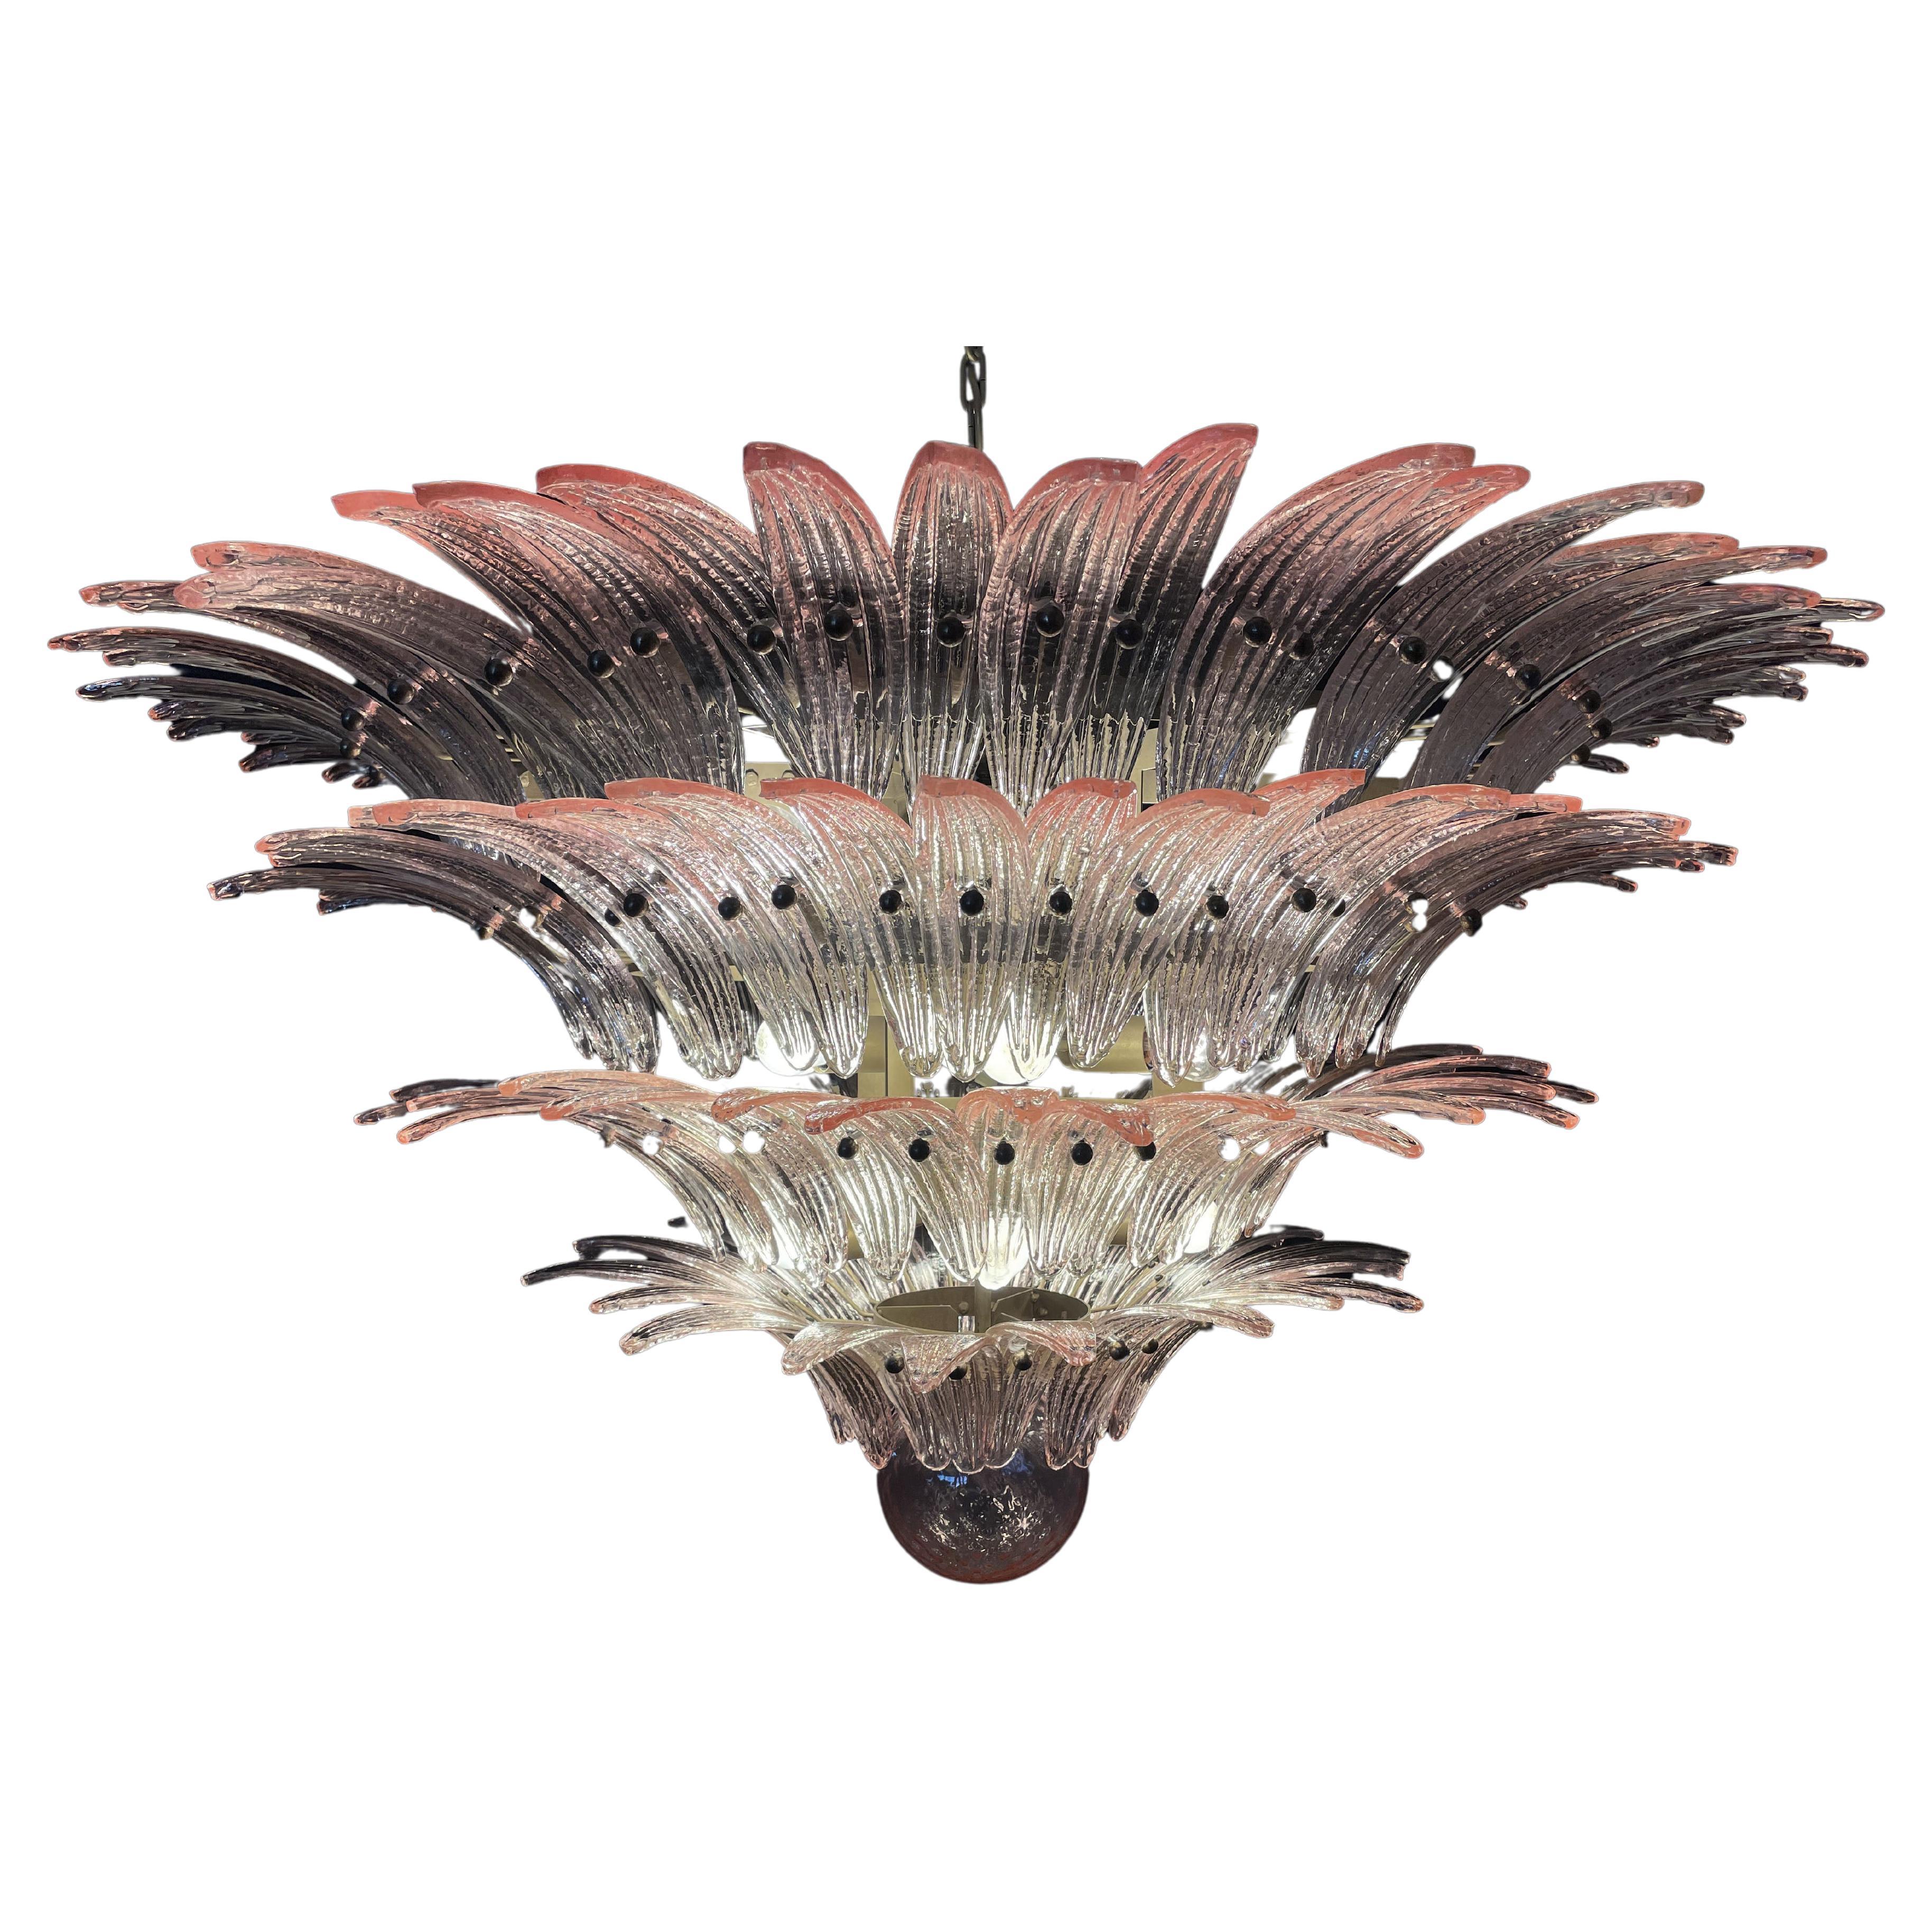 Palmette Deckenleuchte aus 163 rosafarbenen Murano-Gläsern in einem goldenen Metallrahmen. Murano mundgeblasenes Glas nach traditioneller Art. Struktur aus goldfarbenem Metall.
Zeitraum:1980er Jahre
Abmessungen: 55,10 Zoll (140 cm) Höhe mit Kette;